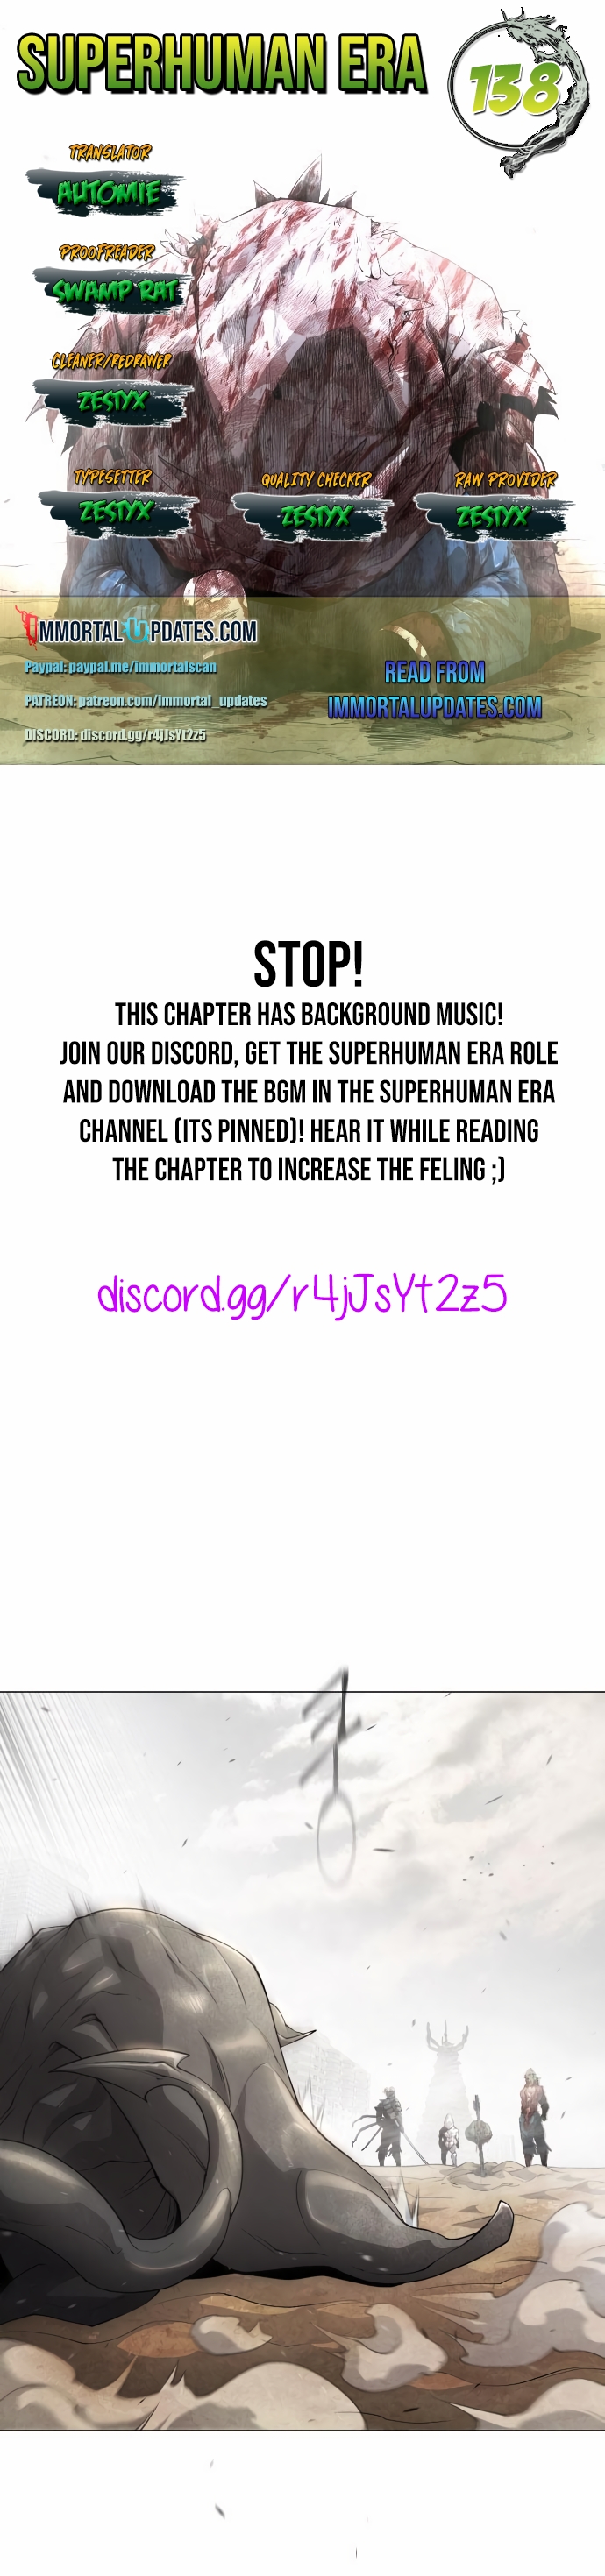 Superhuman Era - Chapter 30678 - Image 1